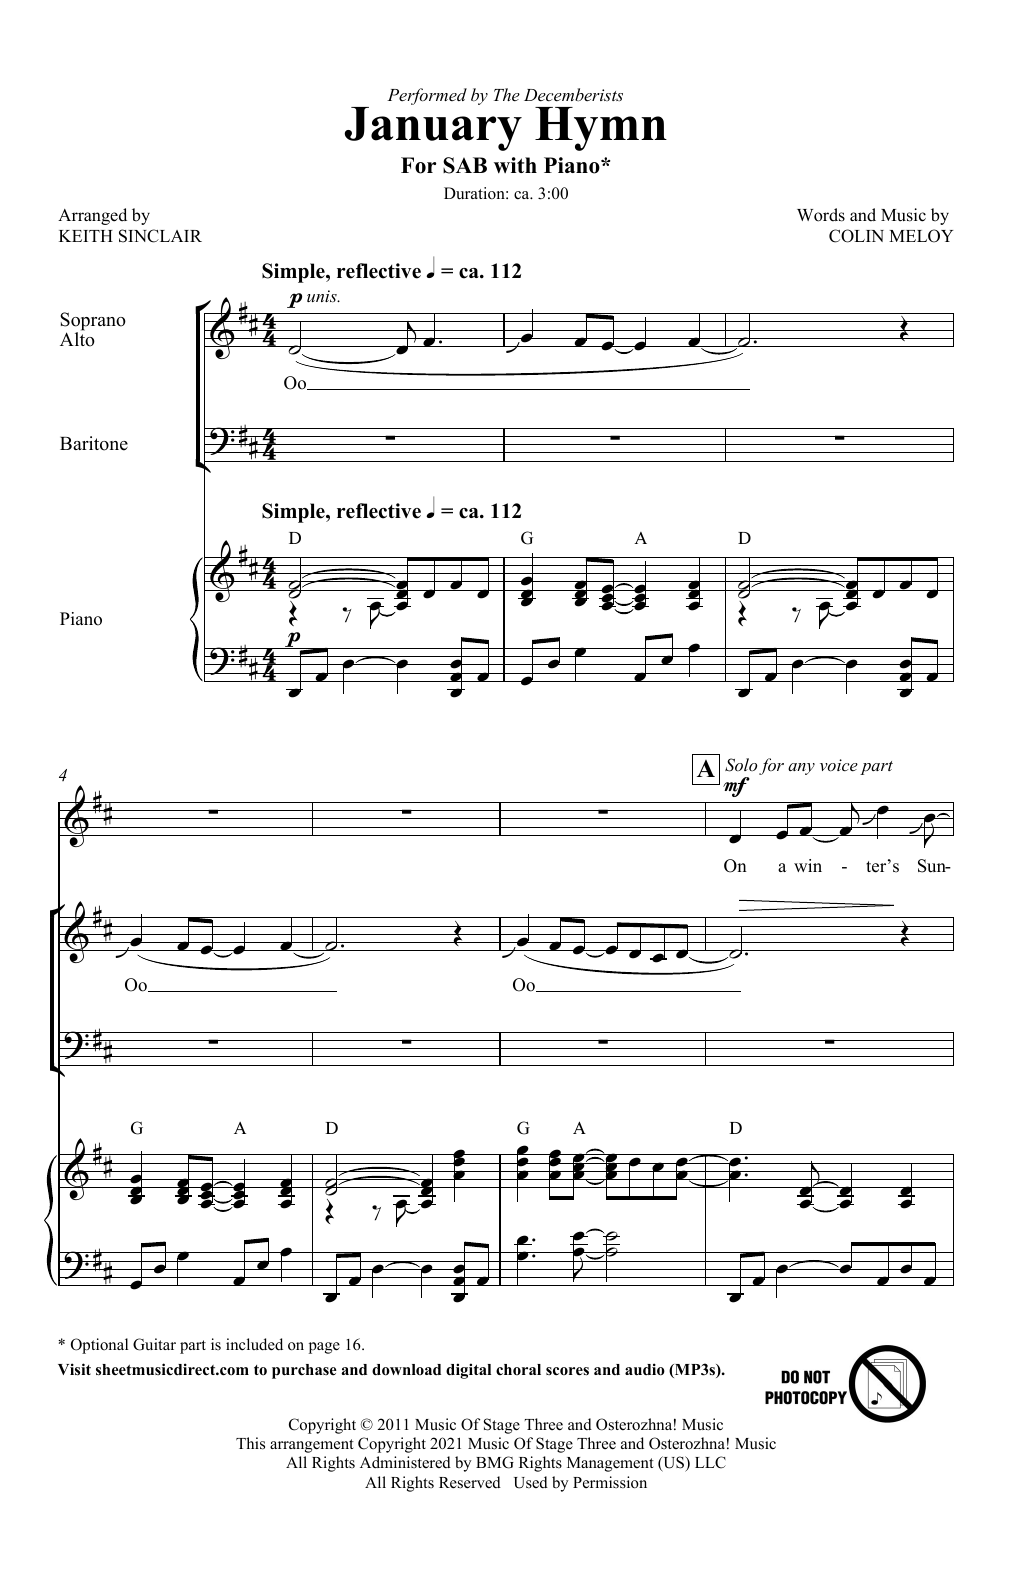 January Hymn (arr. Keith Sinclair) (SAB Choir) von Colin Meloy